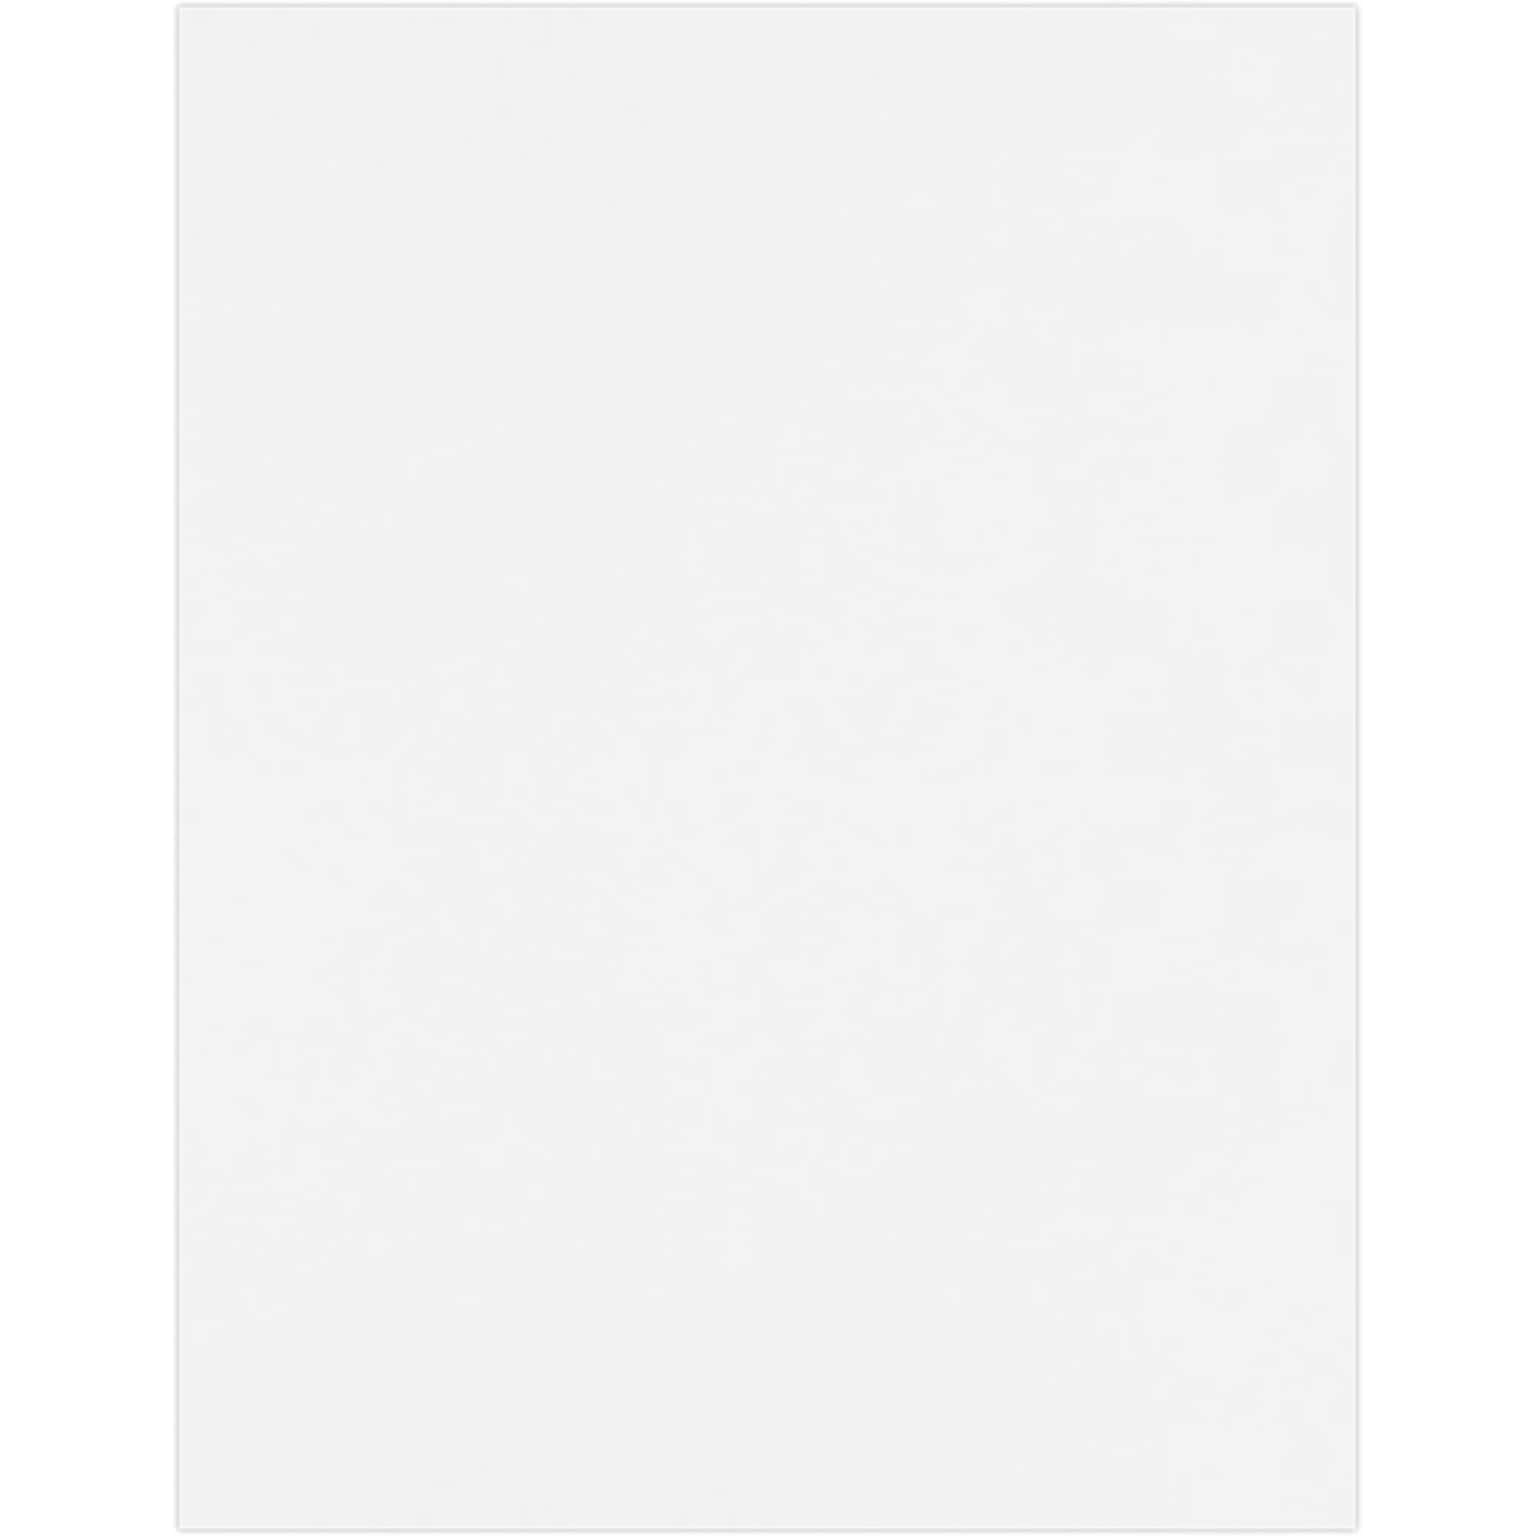 JAM PAPER 8.5 x 11 Premium Cardstock, 110lb, White, 50/pack  (81211-C-WPC-50)